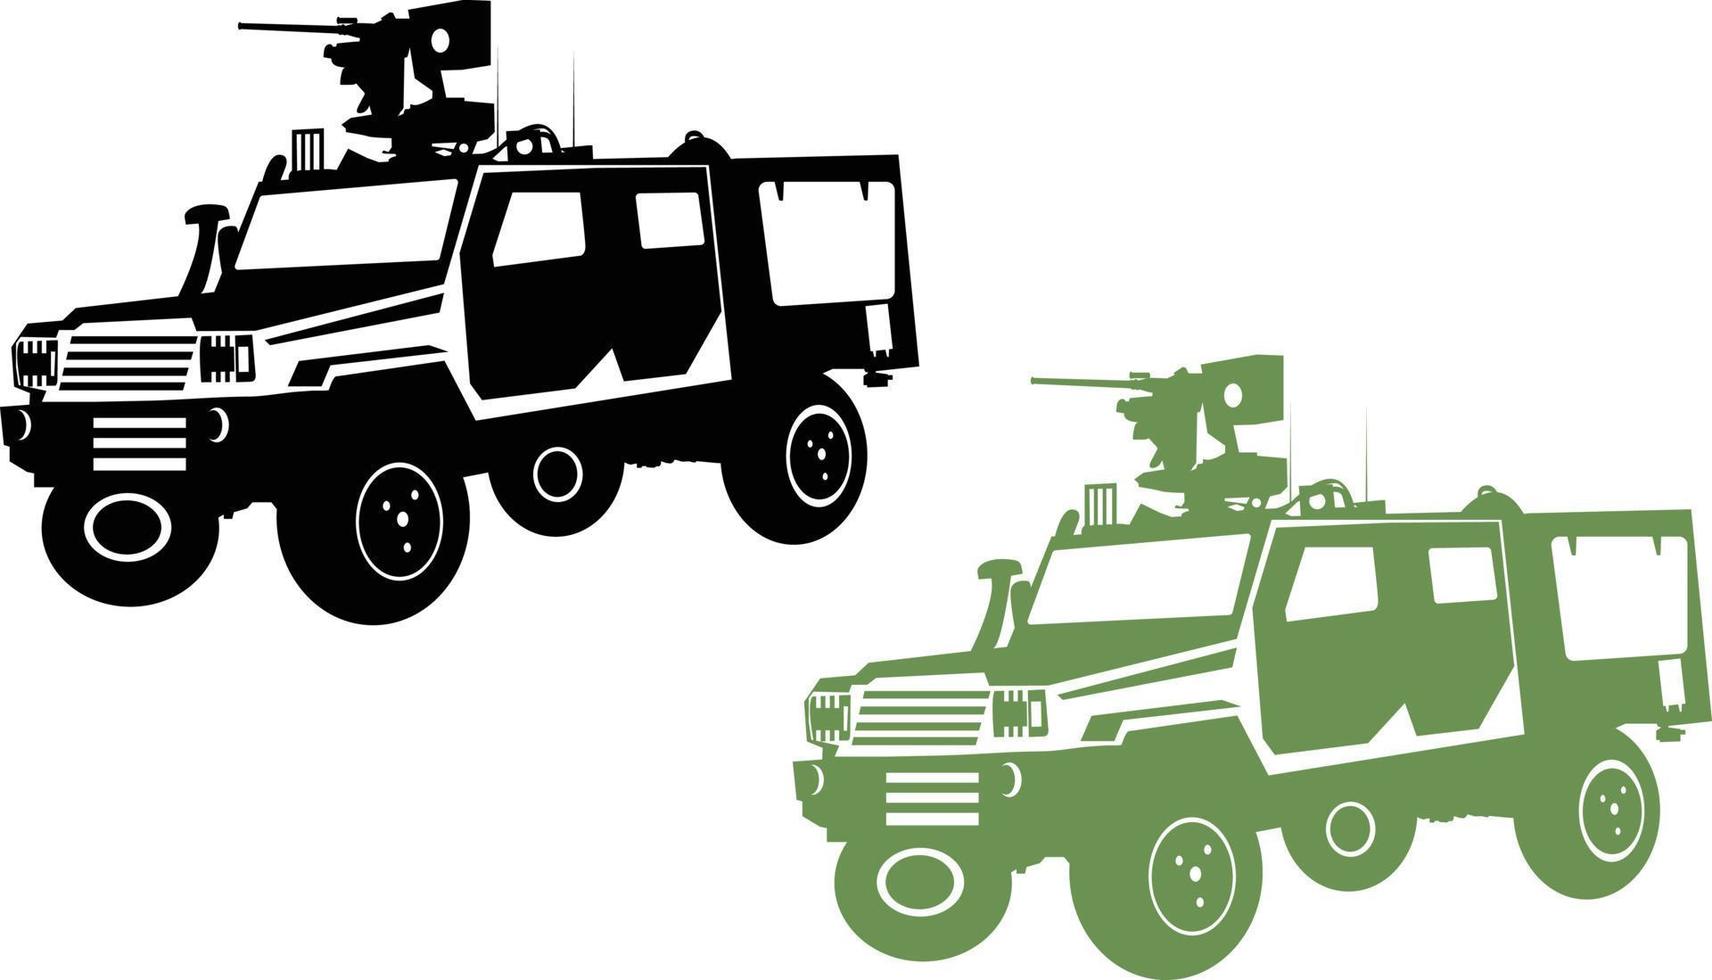 veículo militar, jipe de caminhão off-road do exército, vetor de outrider rg, vetor de automóveis de carros